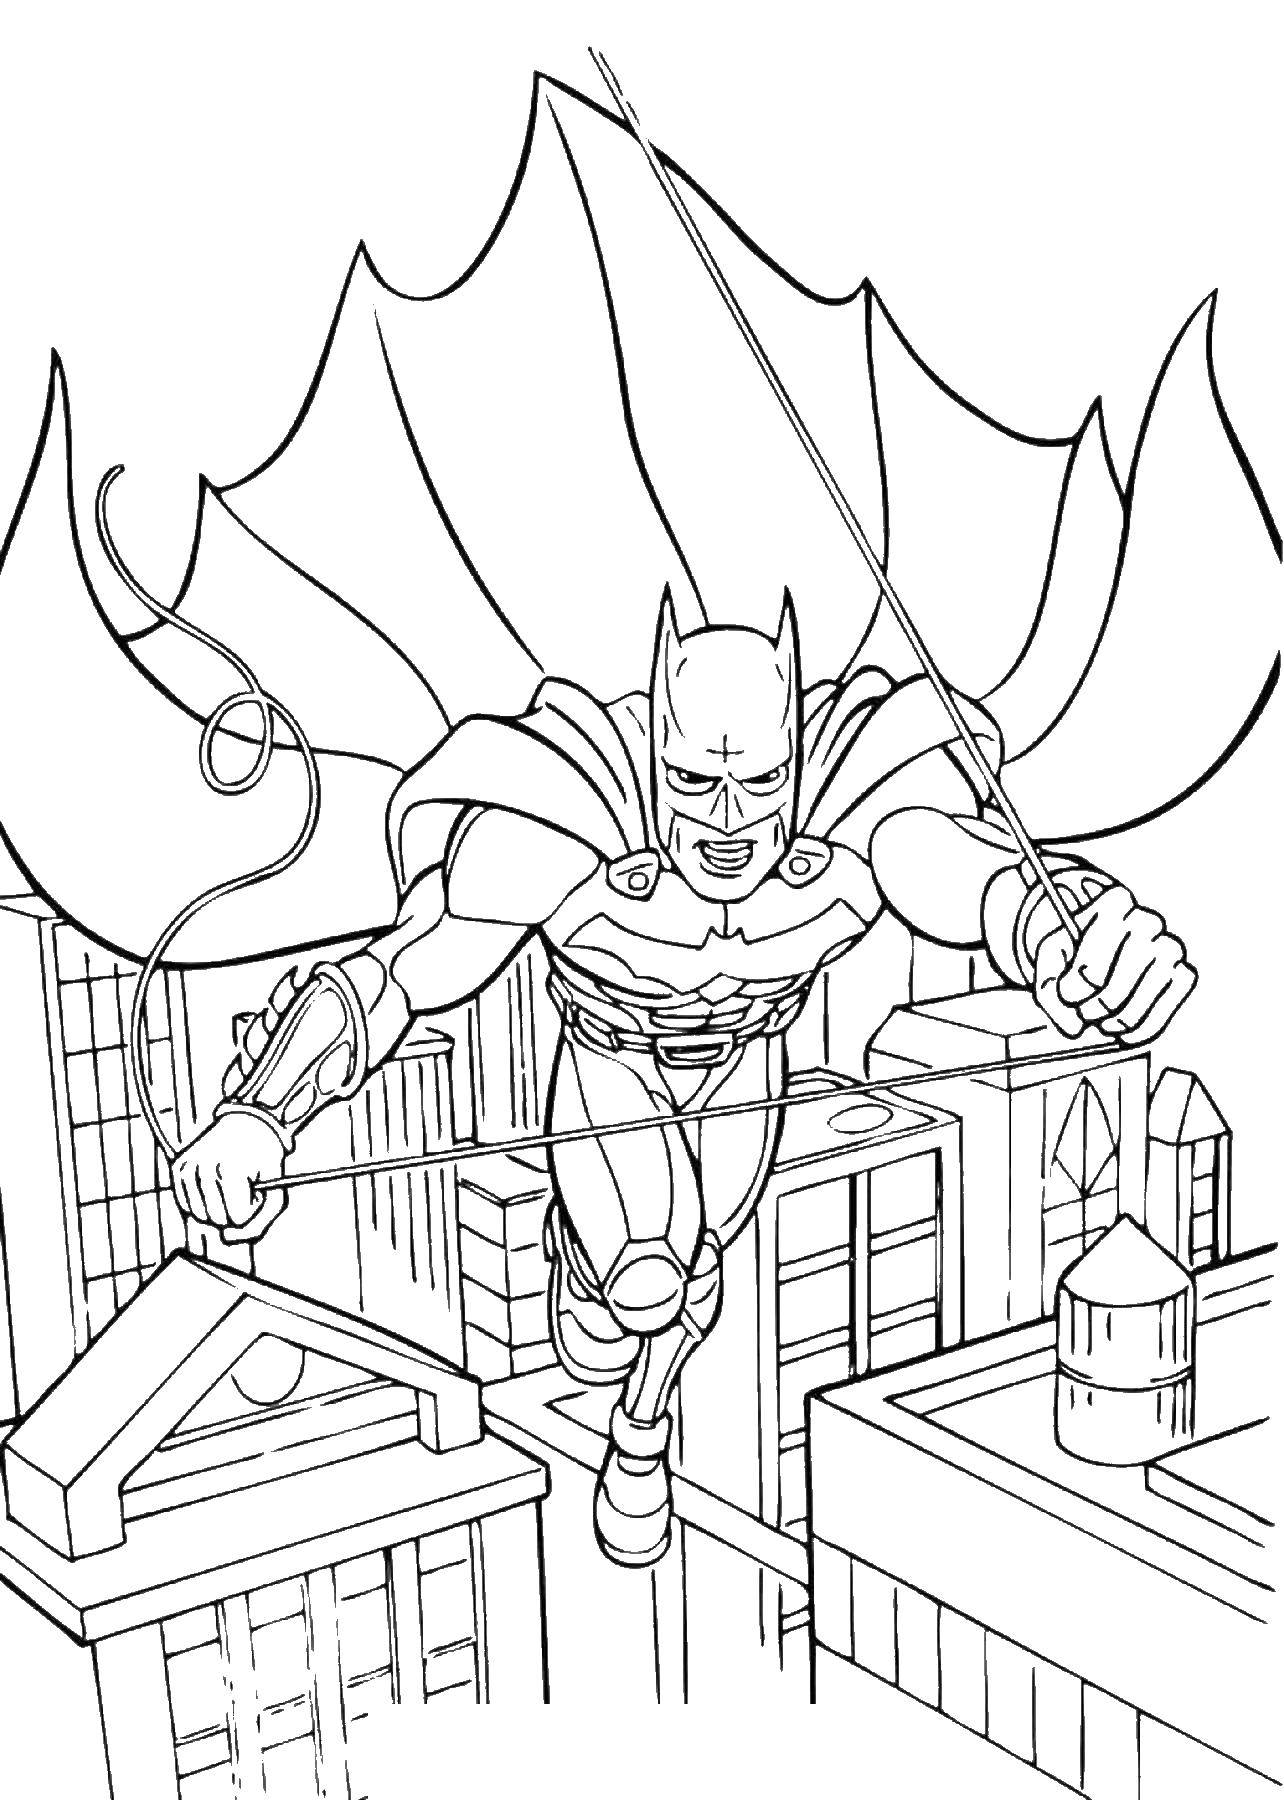 Раскраска с героями комиксов Бэтмен из DC Comics для детей (супергерои)